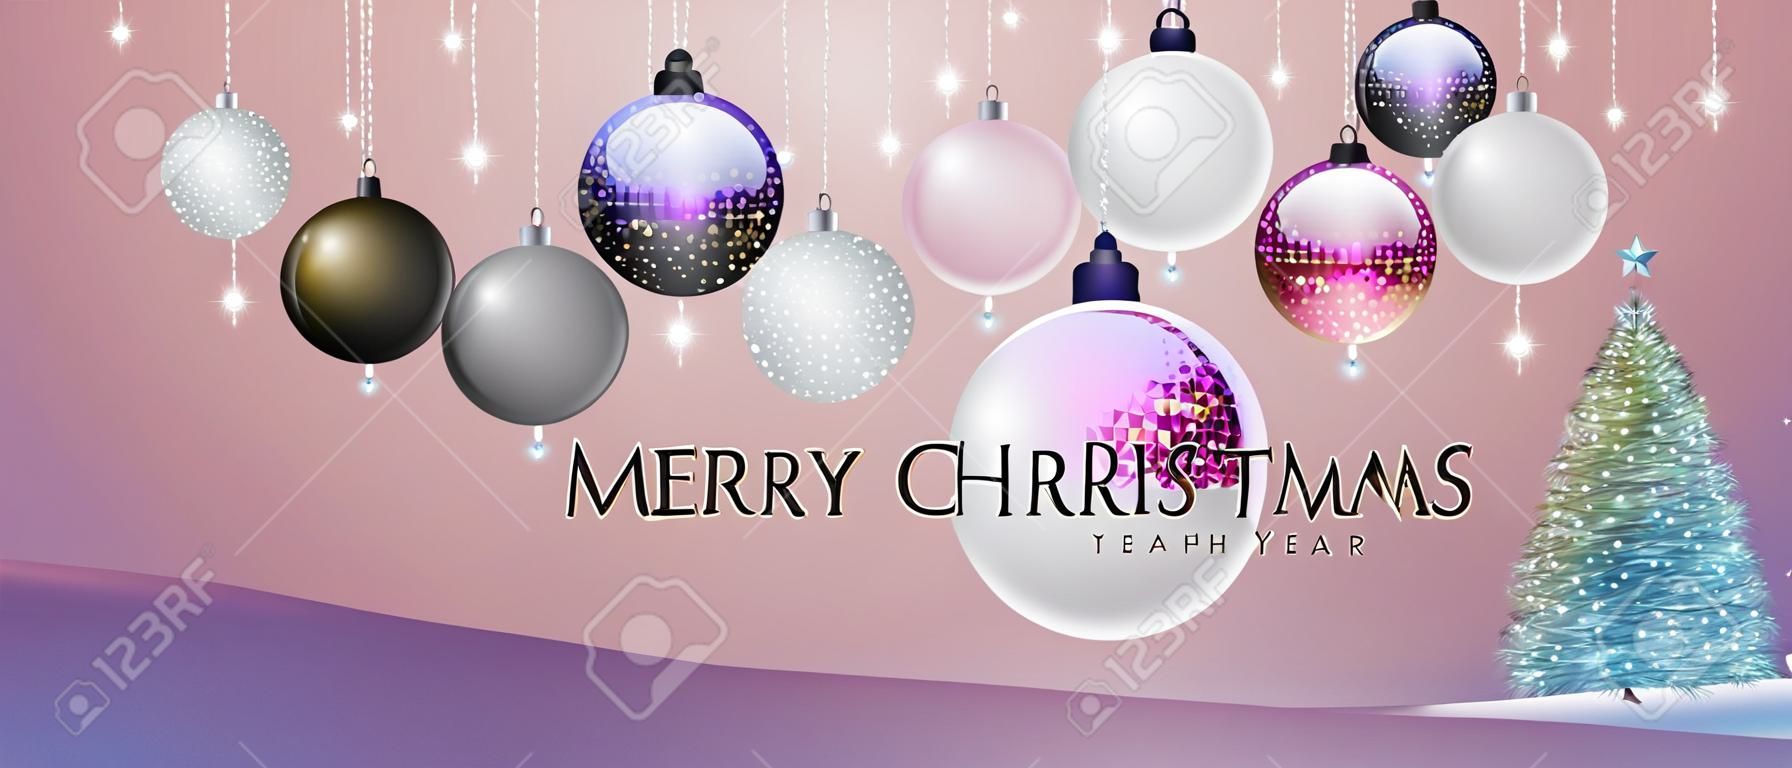 Feliz Natal e feliz cartaz de Ano Novo com decorações de férias de Natal. Fundo de feriado de Natal. Ilustração vetorial